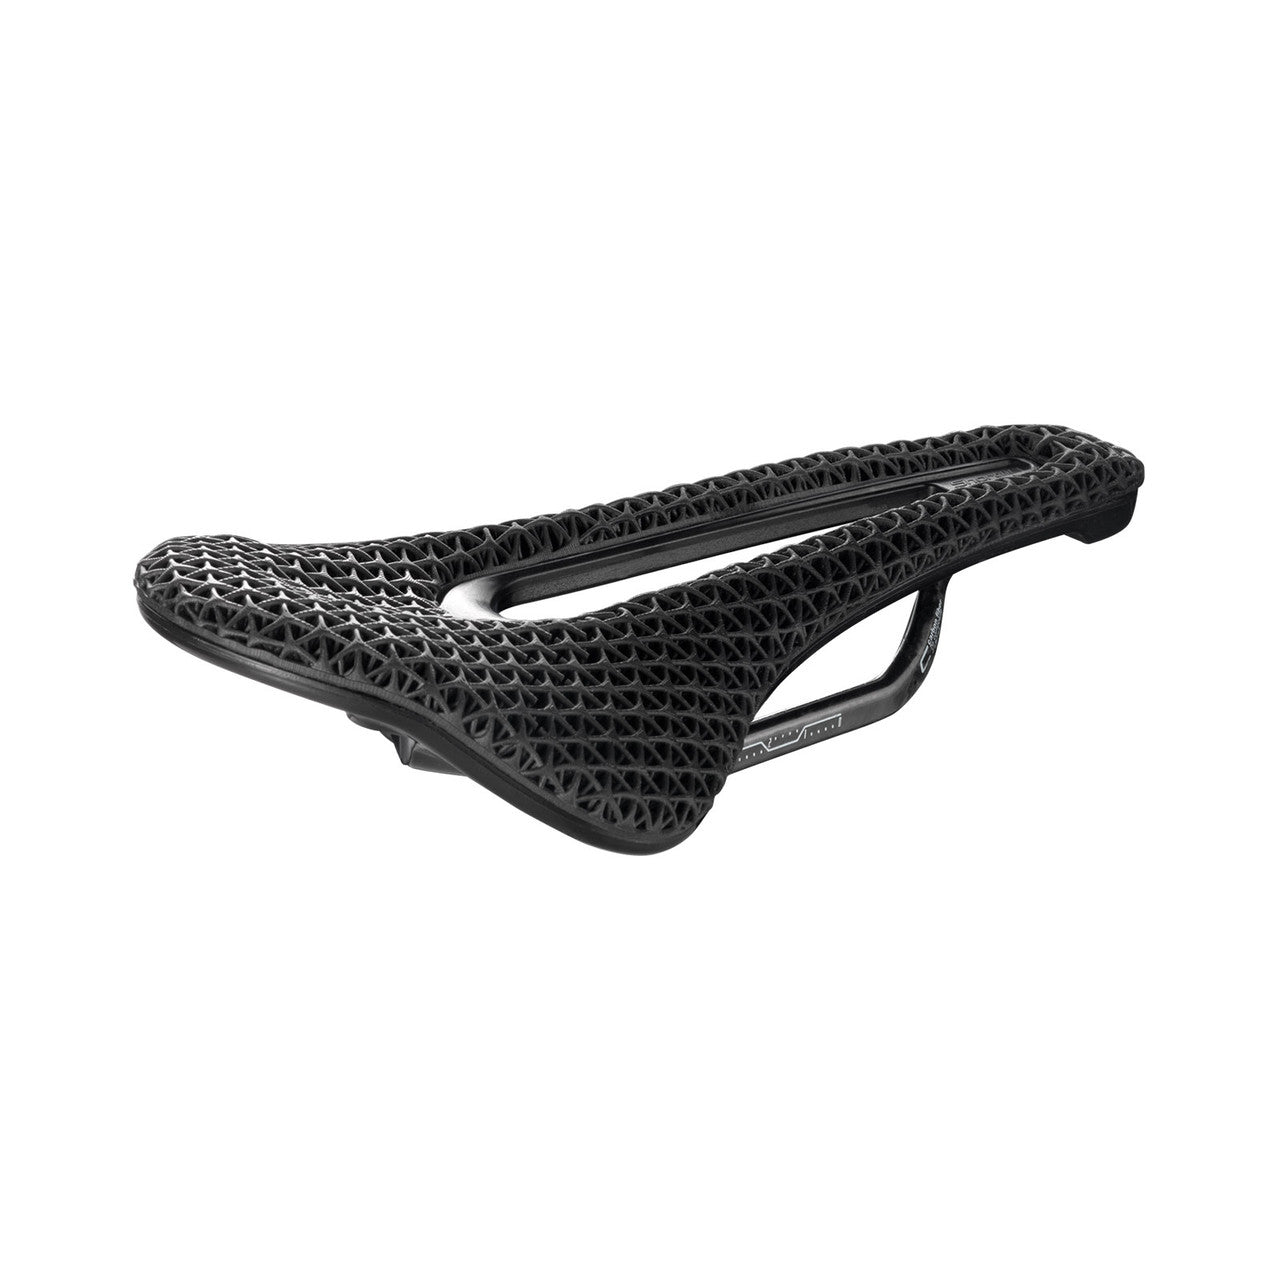 San Marco Shortfit 2.0 3D Carbon FX S3 saddle 